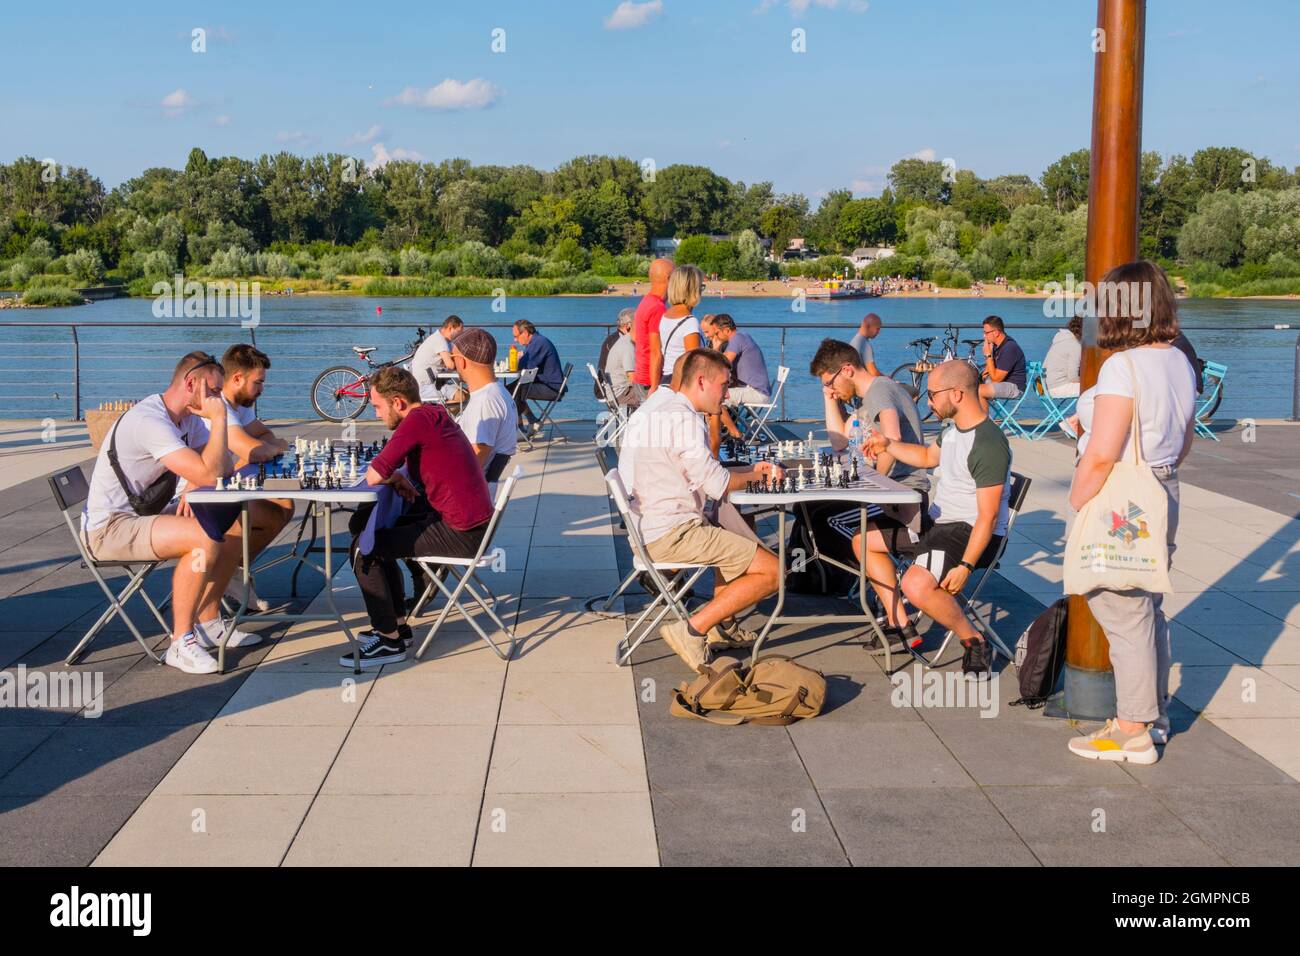 People playing chess, Bulwar Karskiego, Wisła Bulwary, riverside promenades, Warsaw, Poland Stock Photo